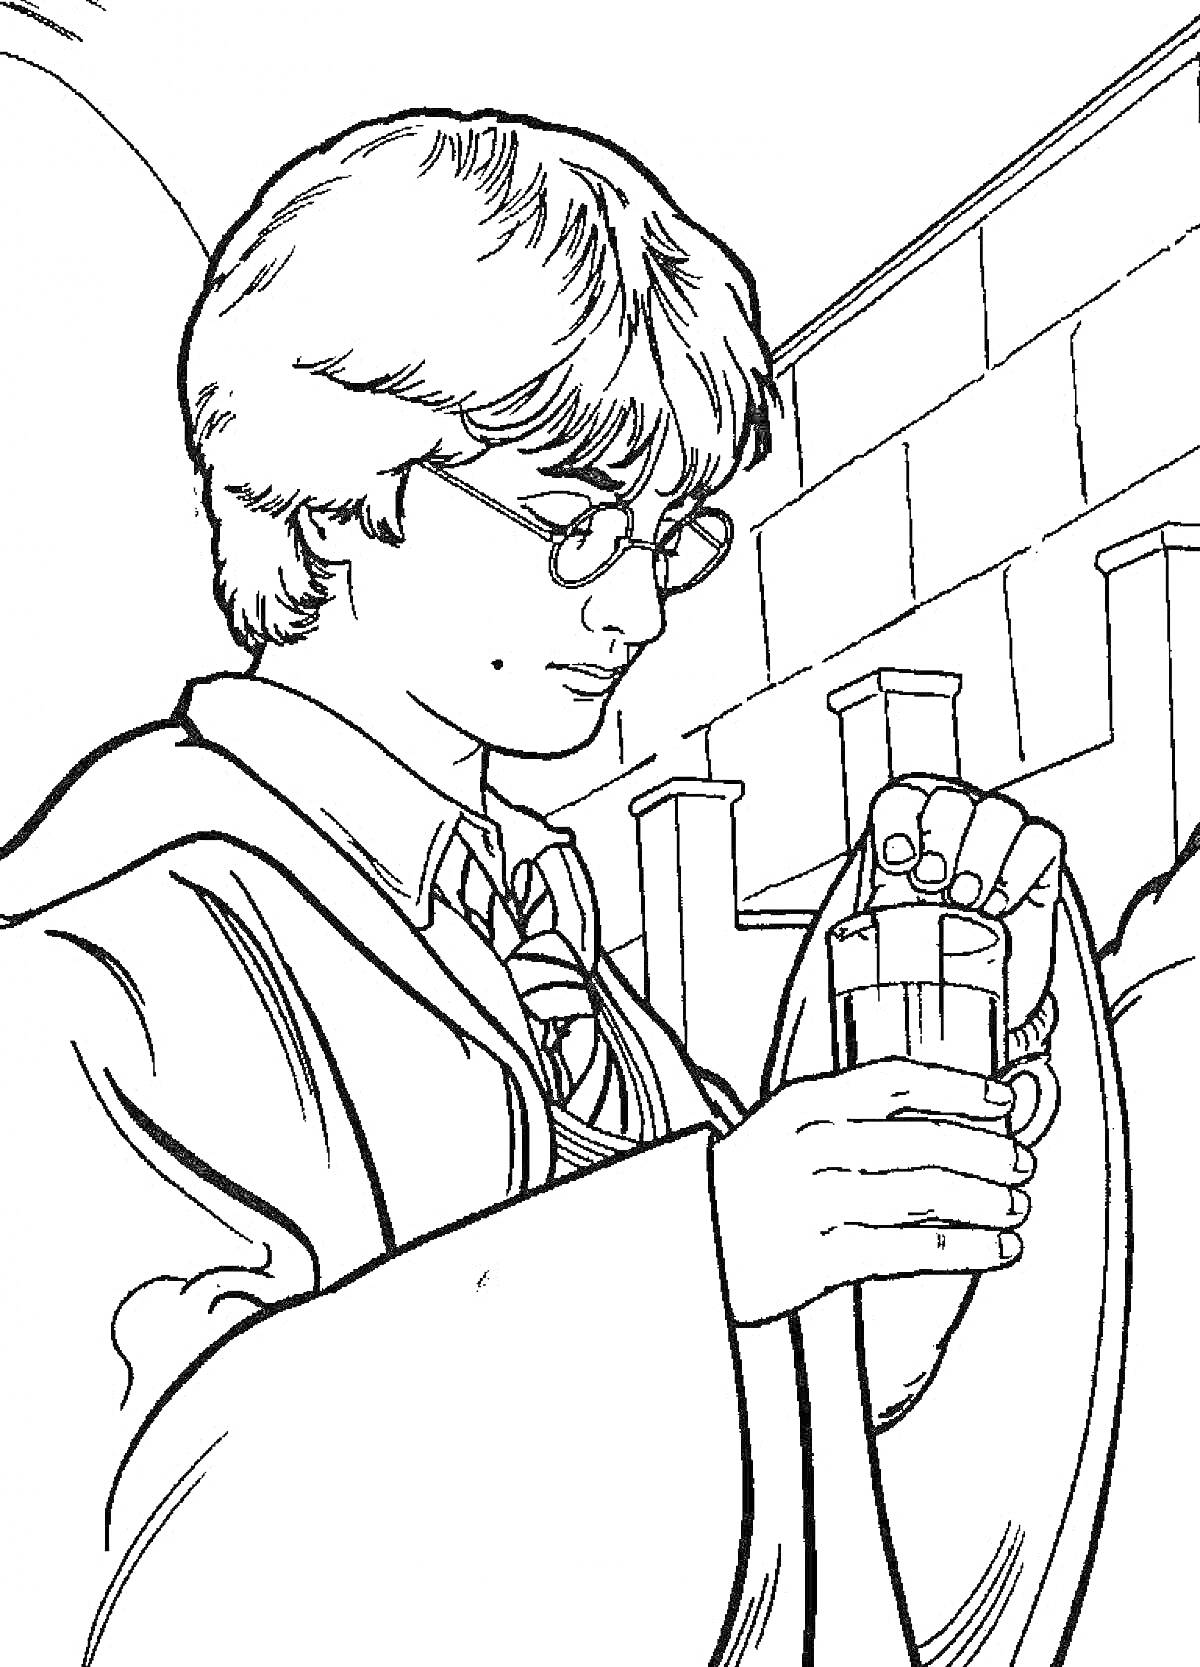 Гарри Поттер с волшебной палочкой и бокалом, позади стена с колоннами